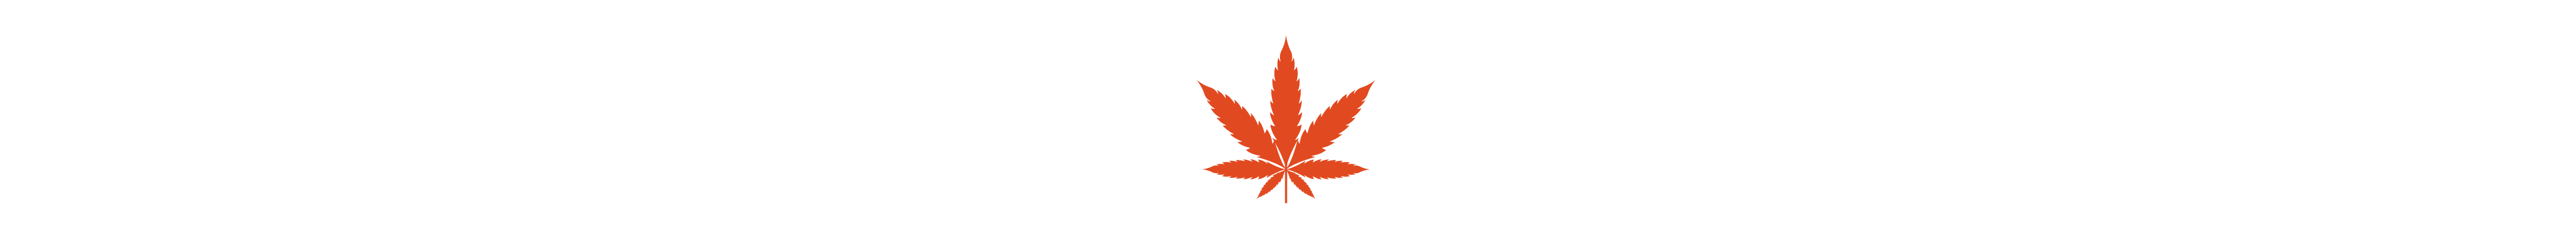 Orange cannabis leaf